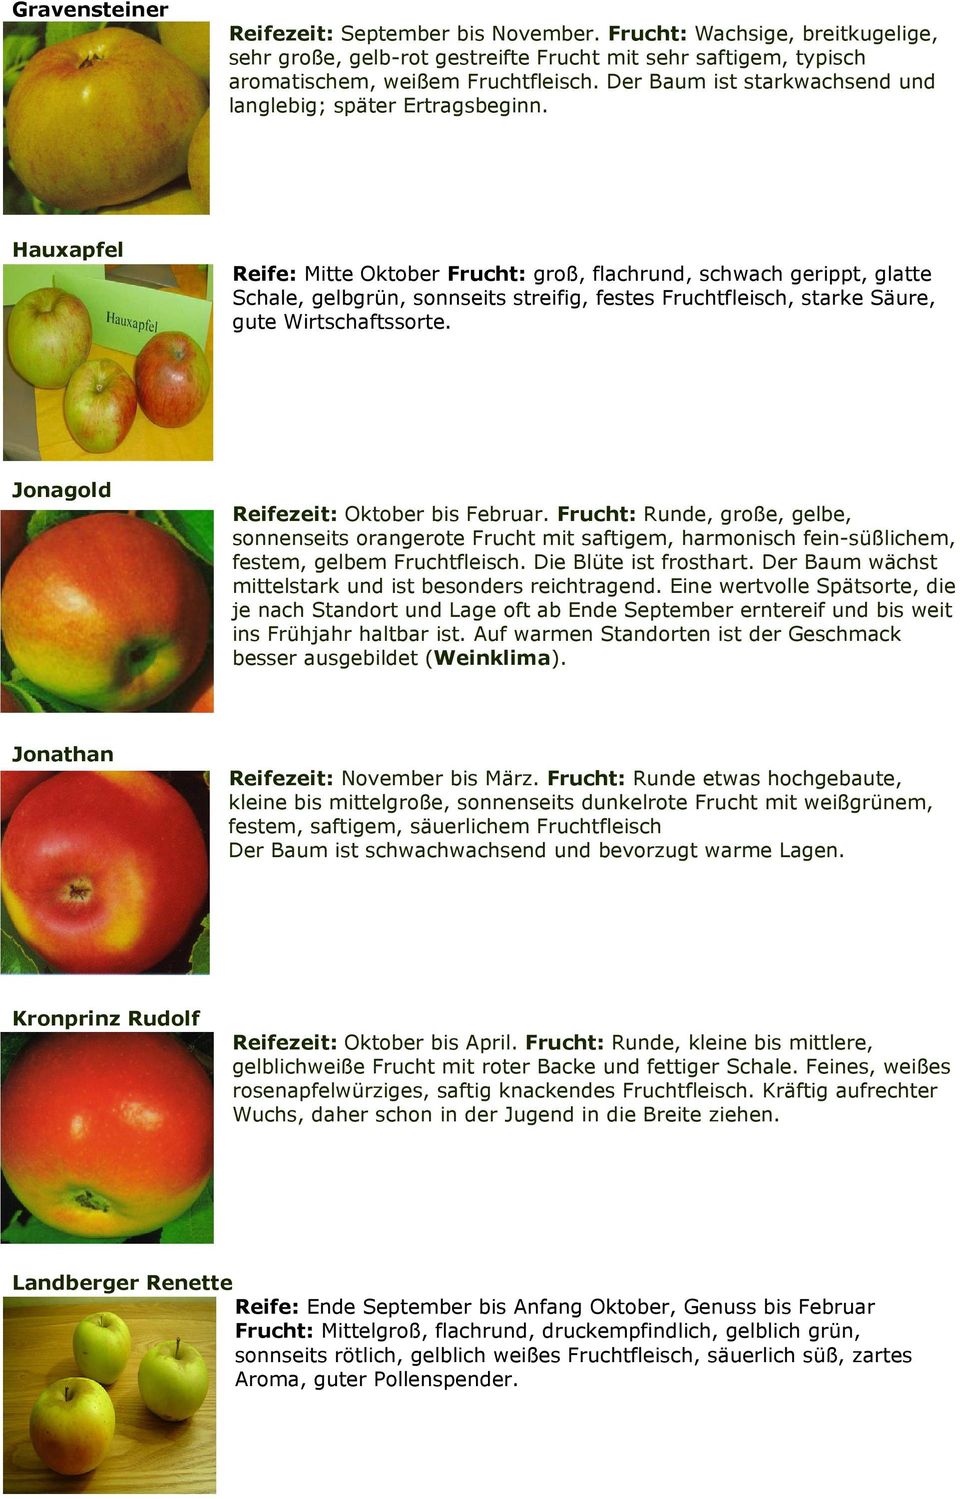 Hauxapfel Reife: Mitte Oktober Frucht: groß, flachrund, schwach gerippt, glatte Schale, gelbgrün, sonnseits streifig, festes Fruchtfleisch, starke Säure, gute Wirtschaftssorte.